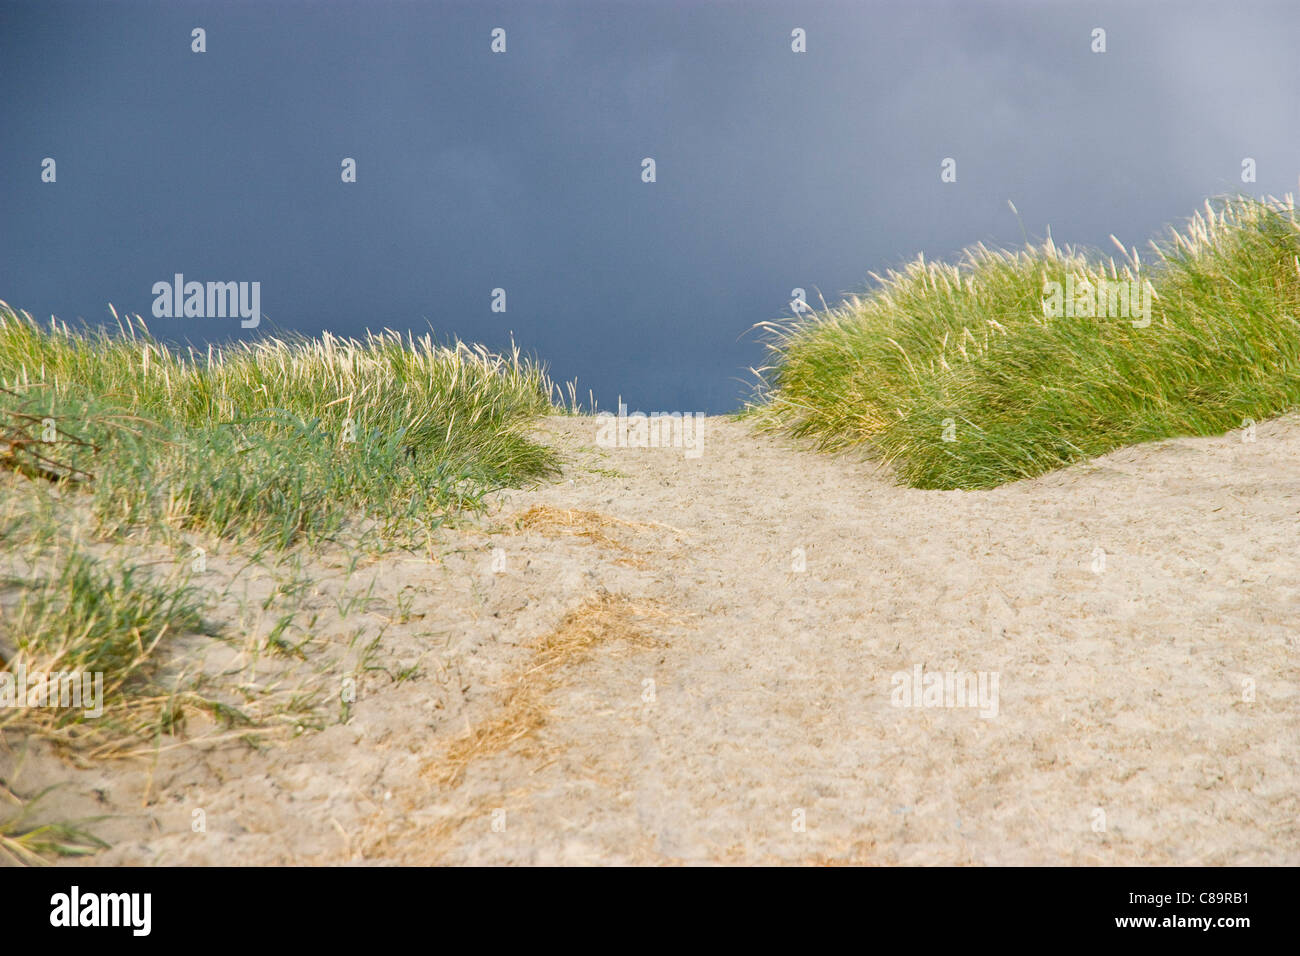 Le Danemark, l'Vrist, voir des dunes de sable avec de l'herbe Banque D'Images